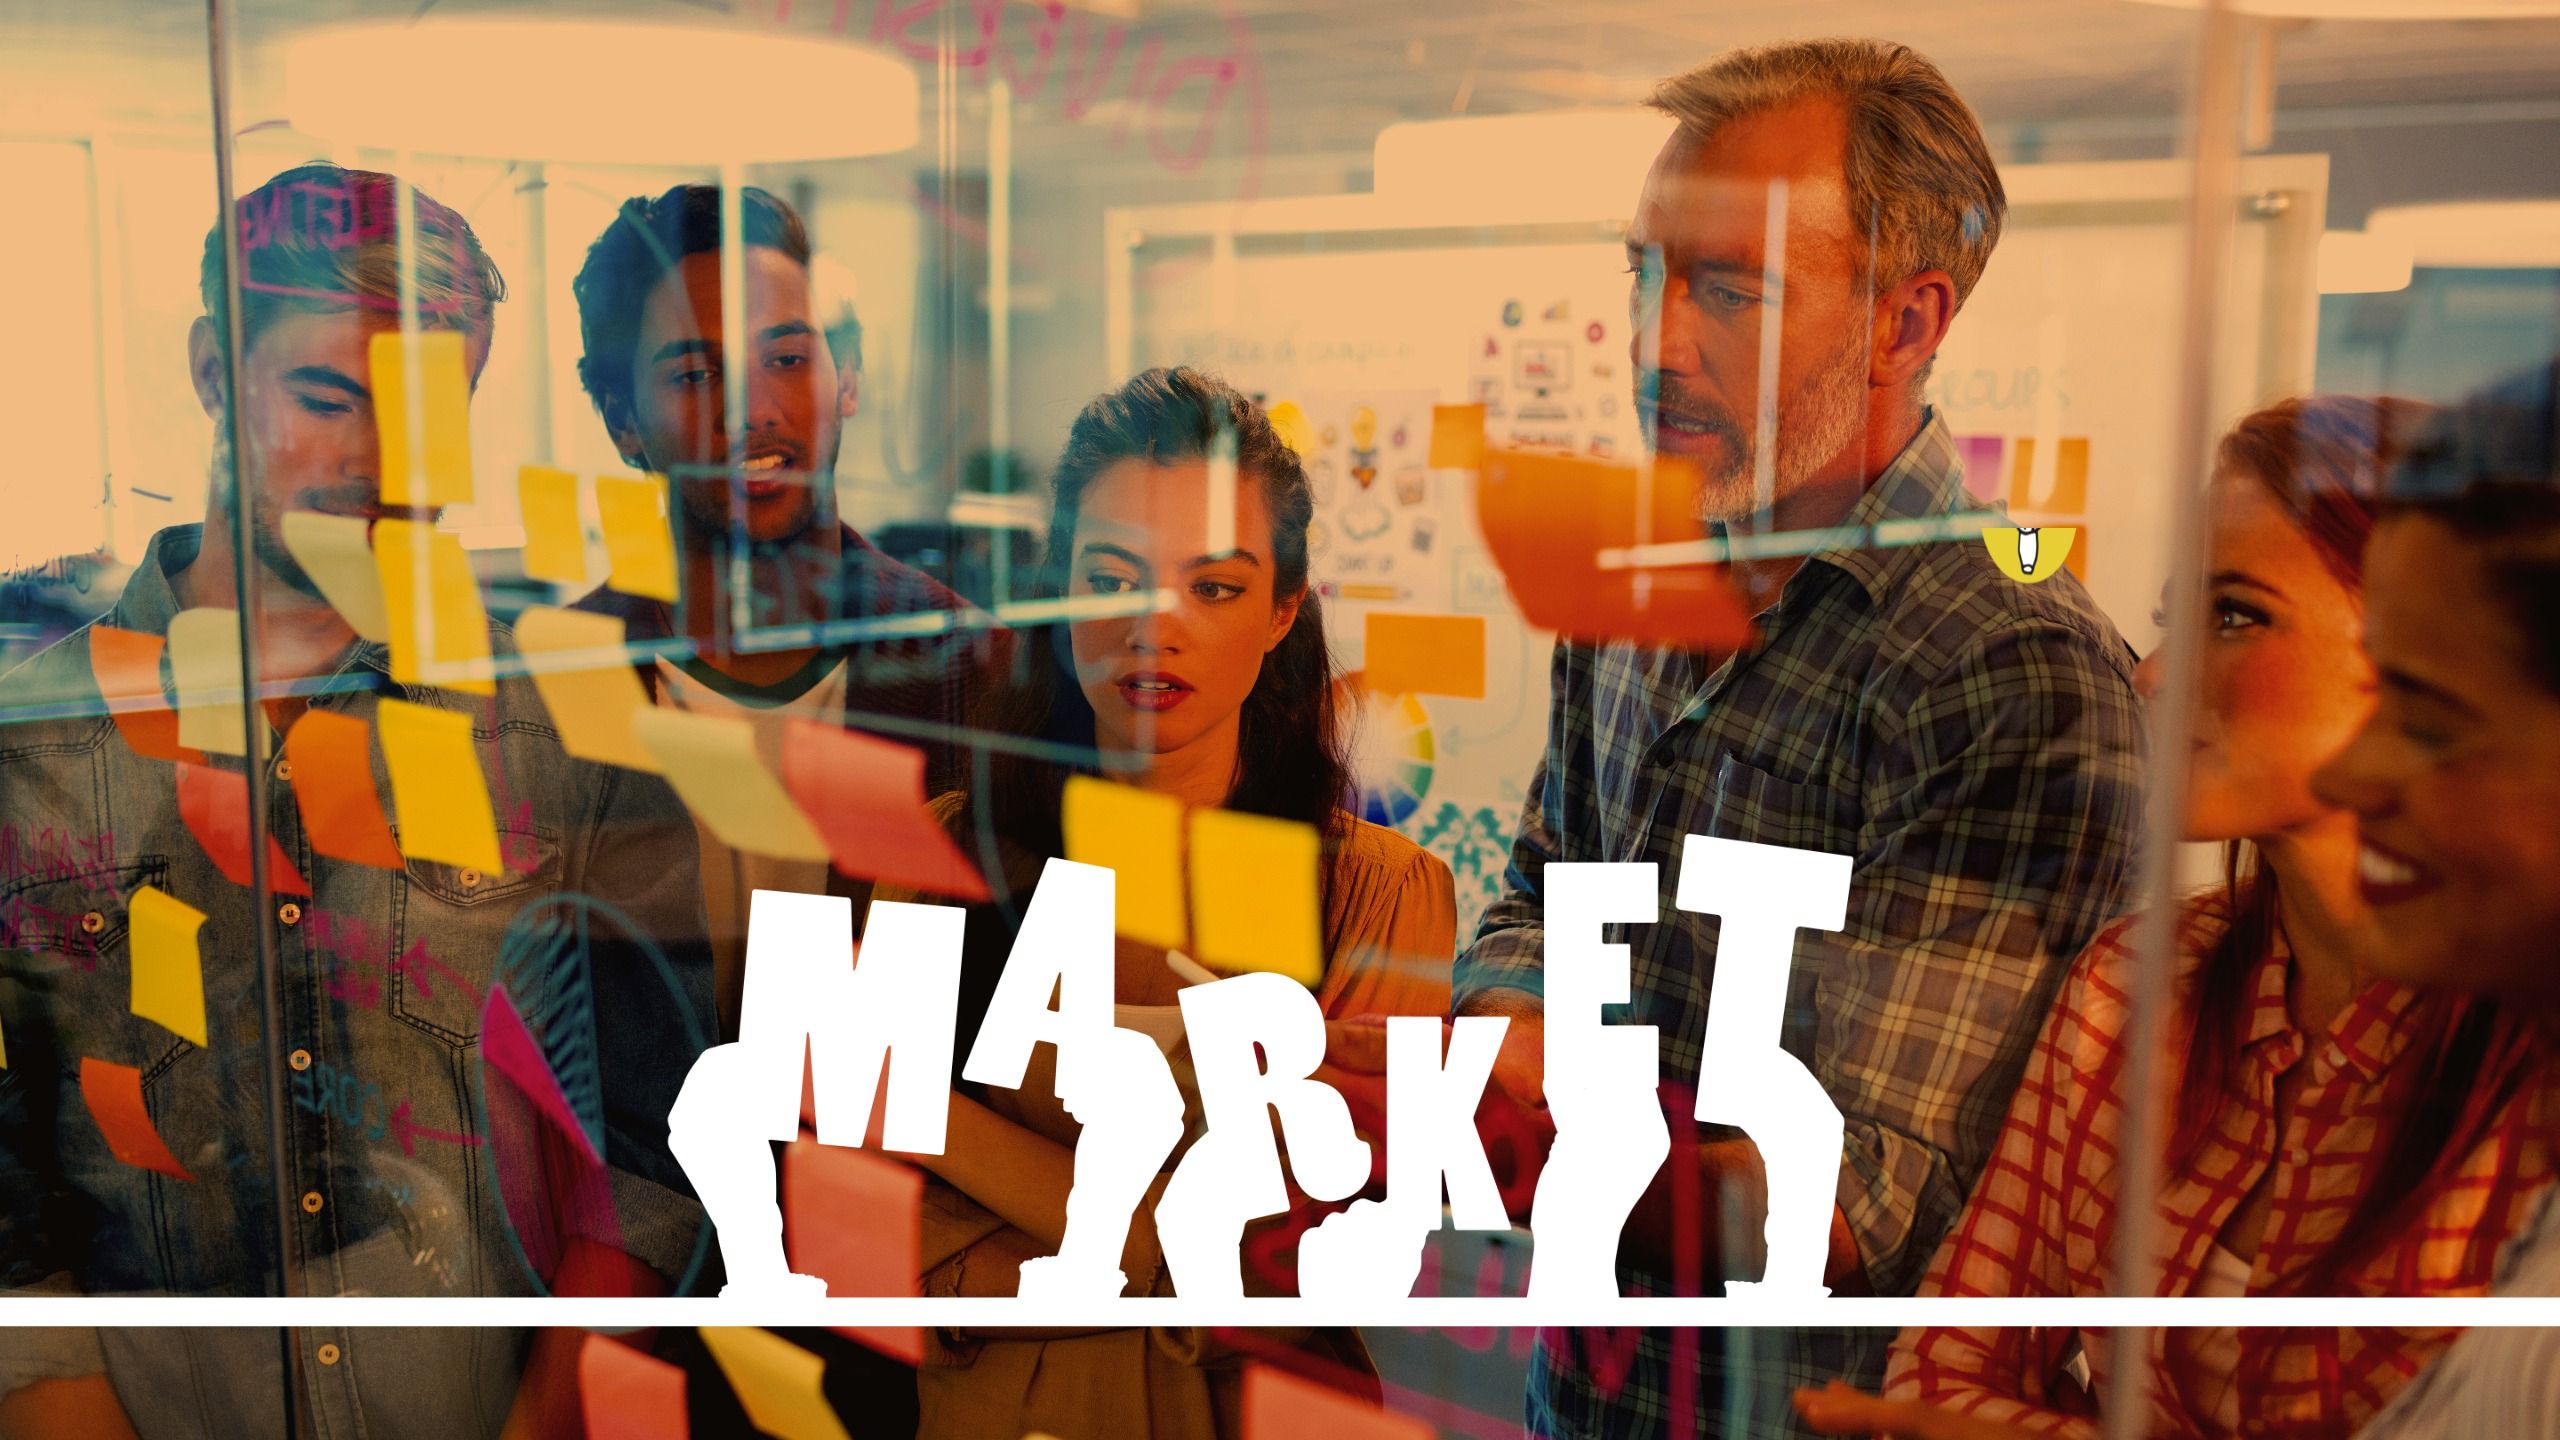 Illustration des Wortmarktes vor dem Hintergrund eines Brainstorming-Teams, das hinter einer Glaswand Ideen erarbeitet